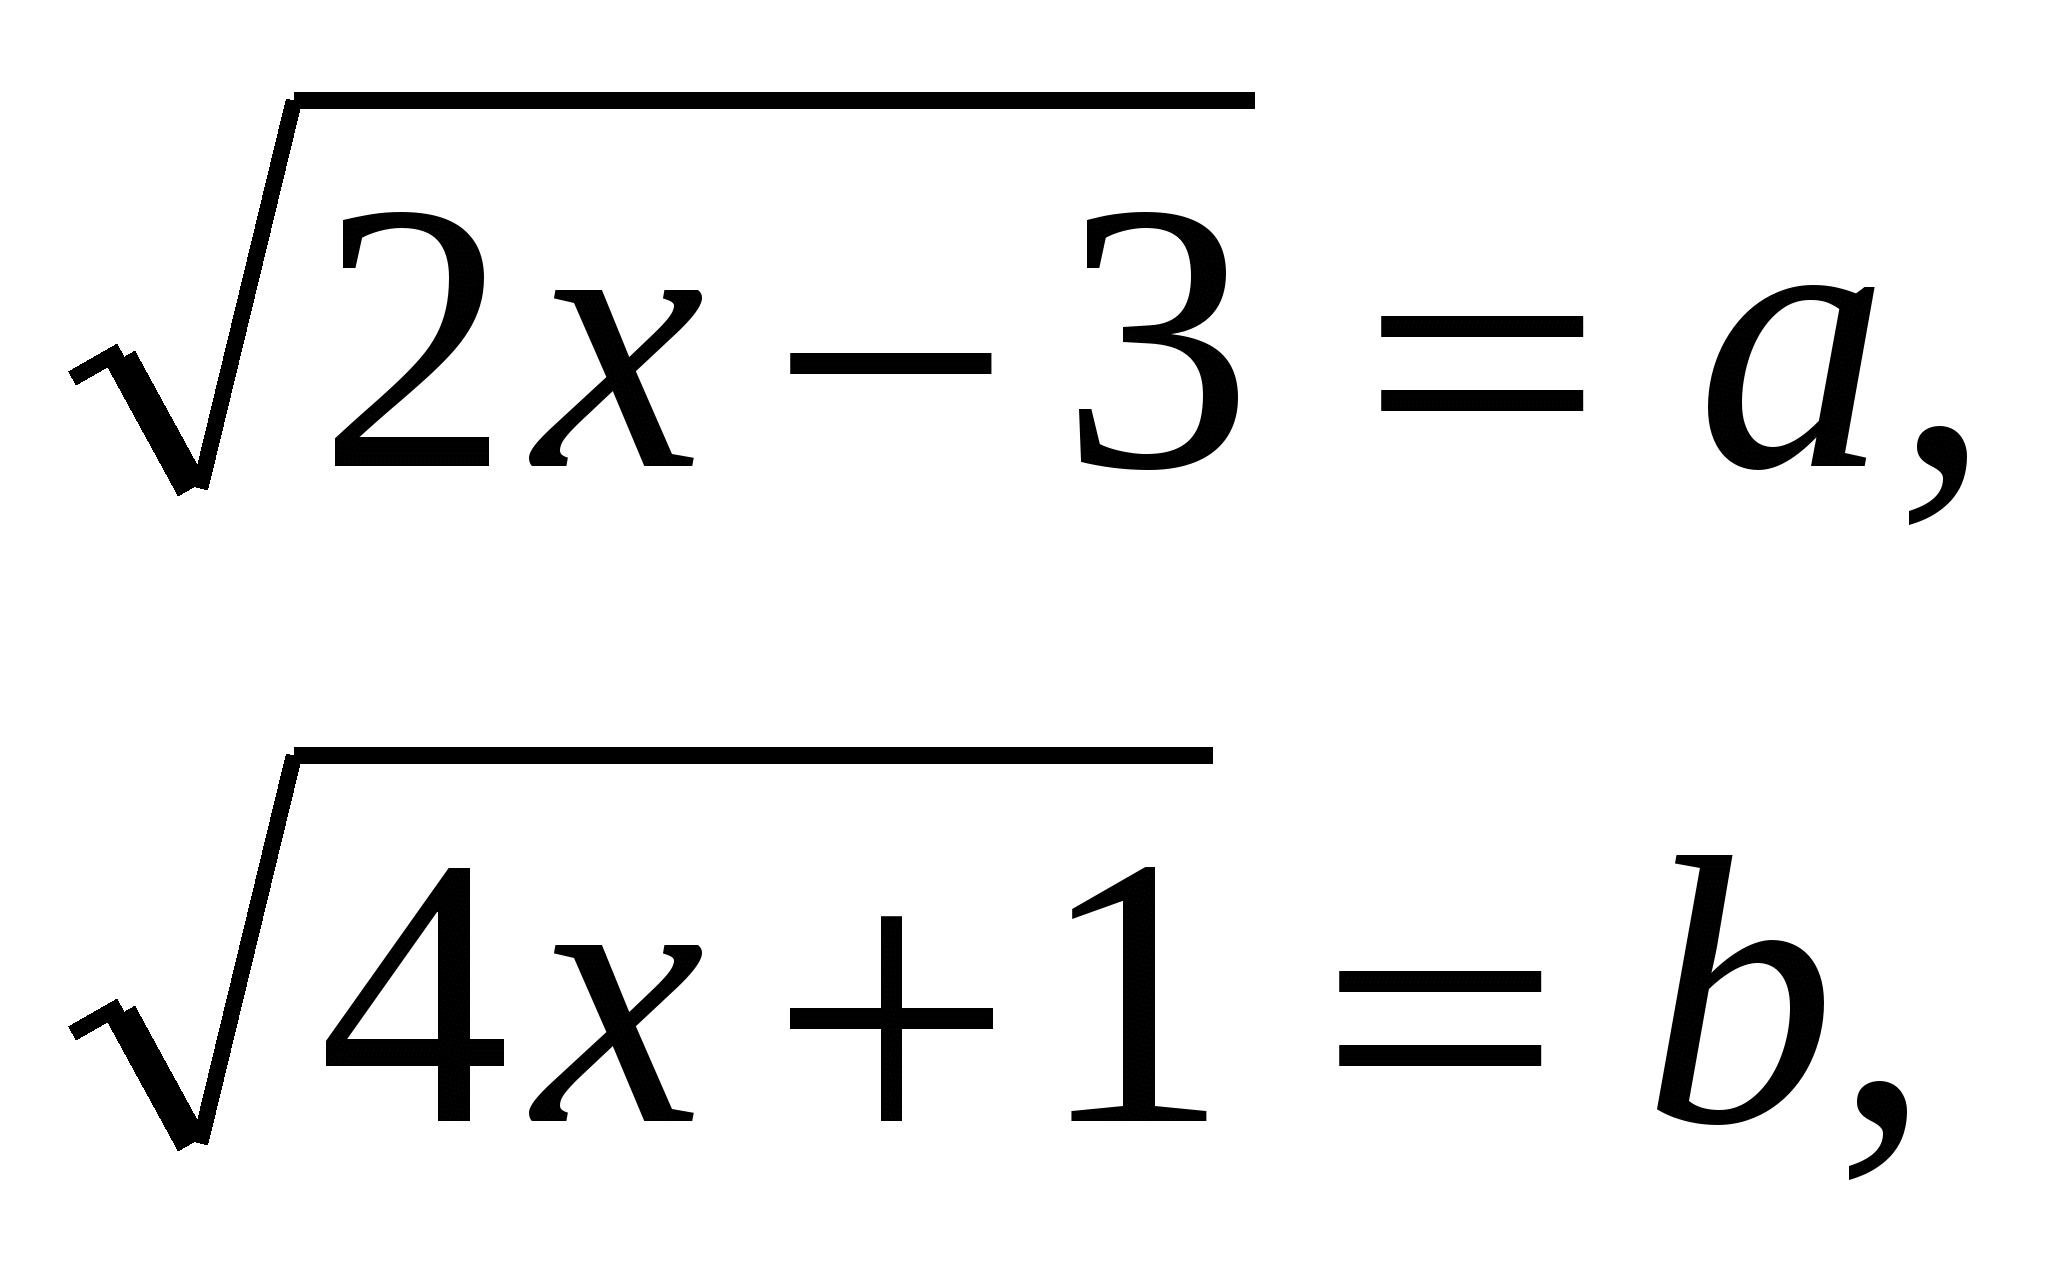 Урок алгебры в 11 классе на тему Методы решения иррациональных уравнений